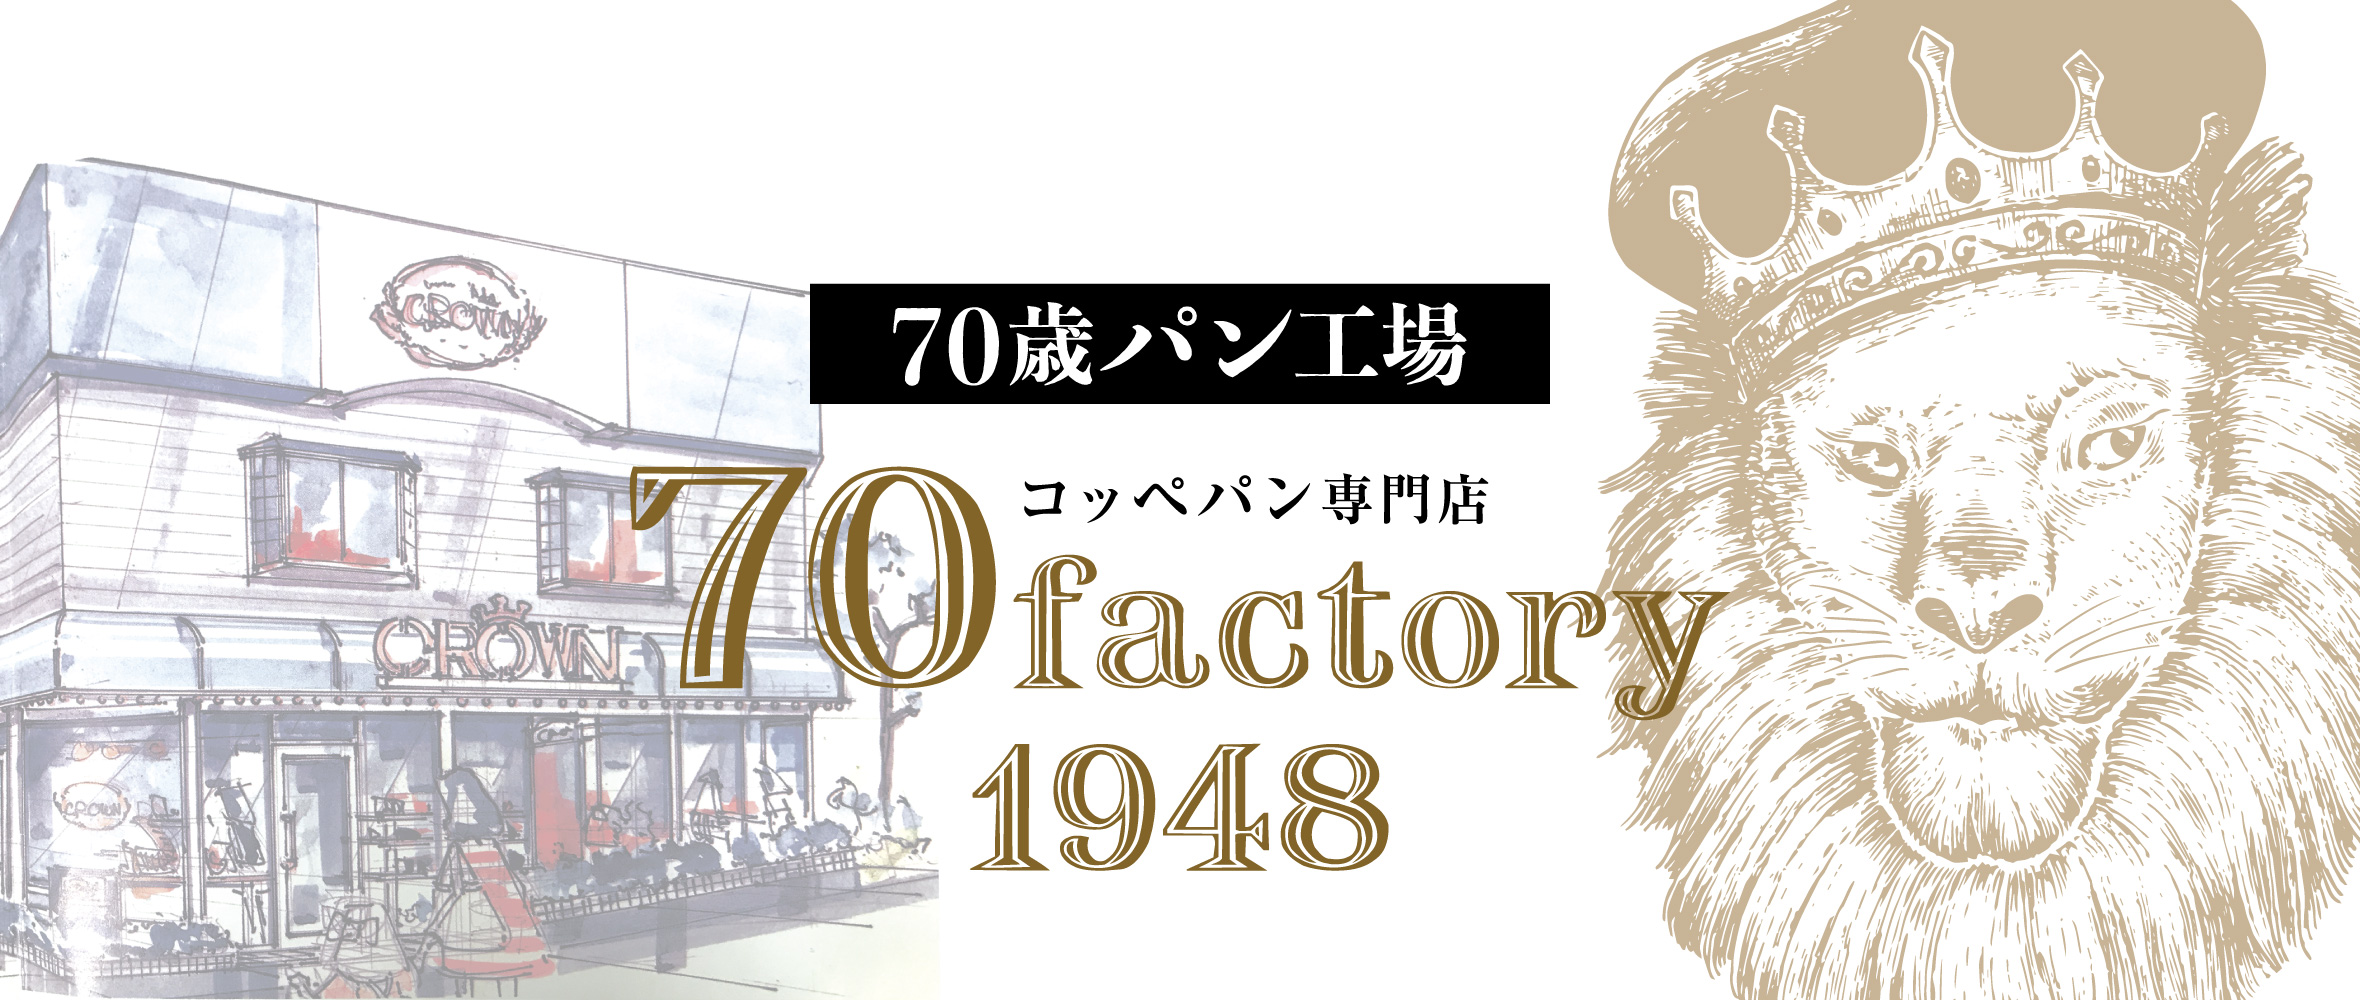 70歳パン工場 コッペパン専門店 70factoryy1948